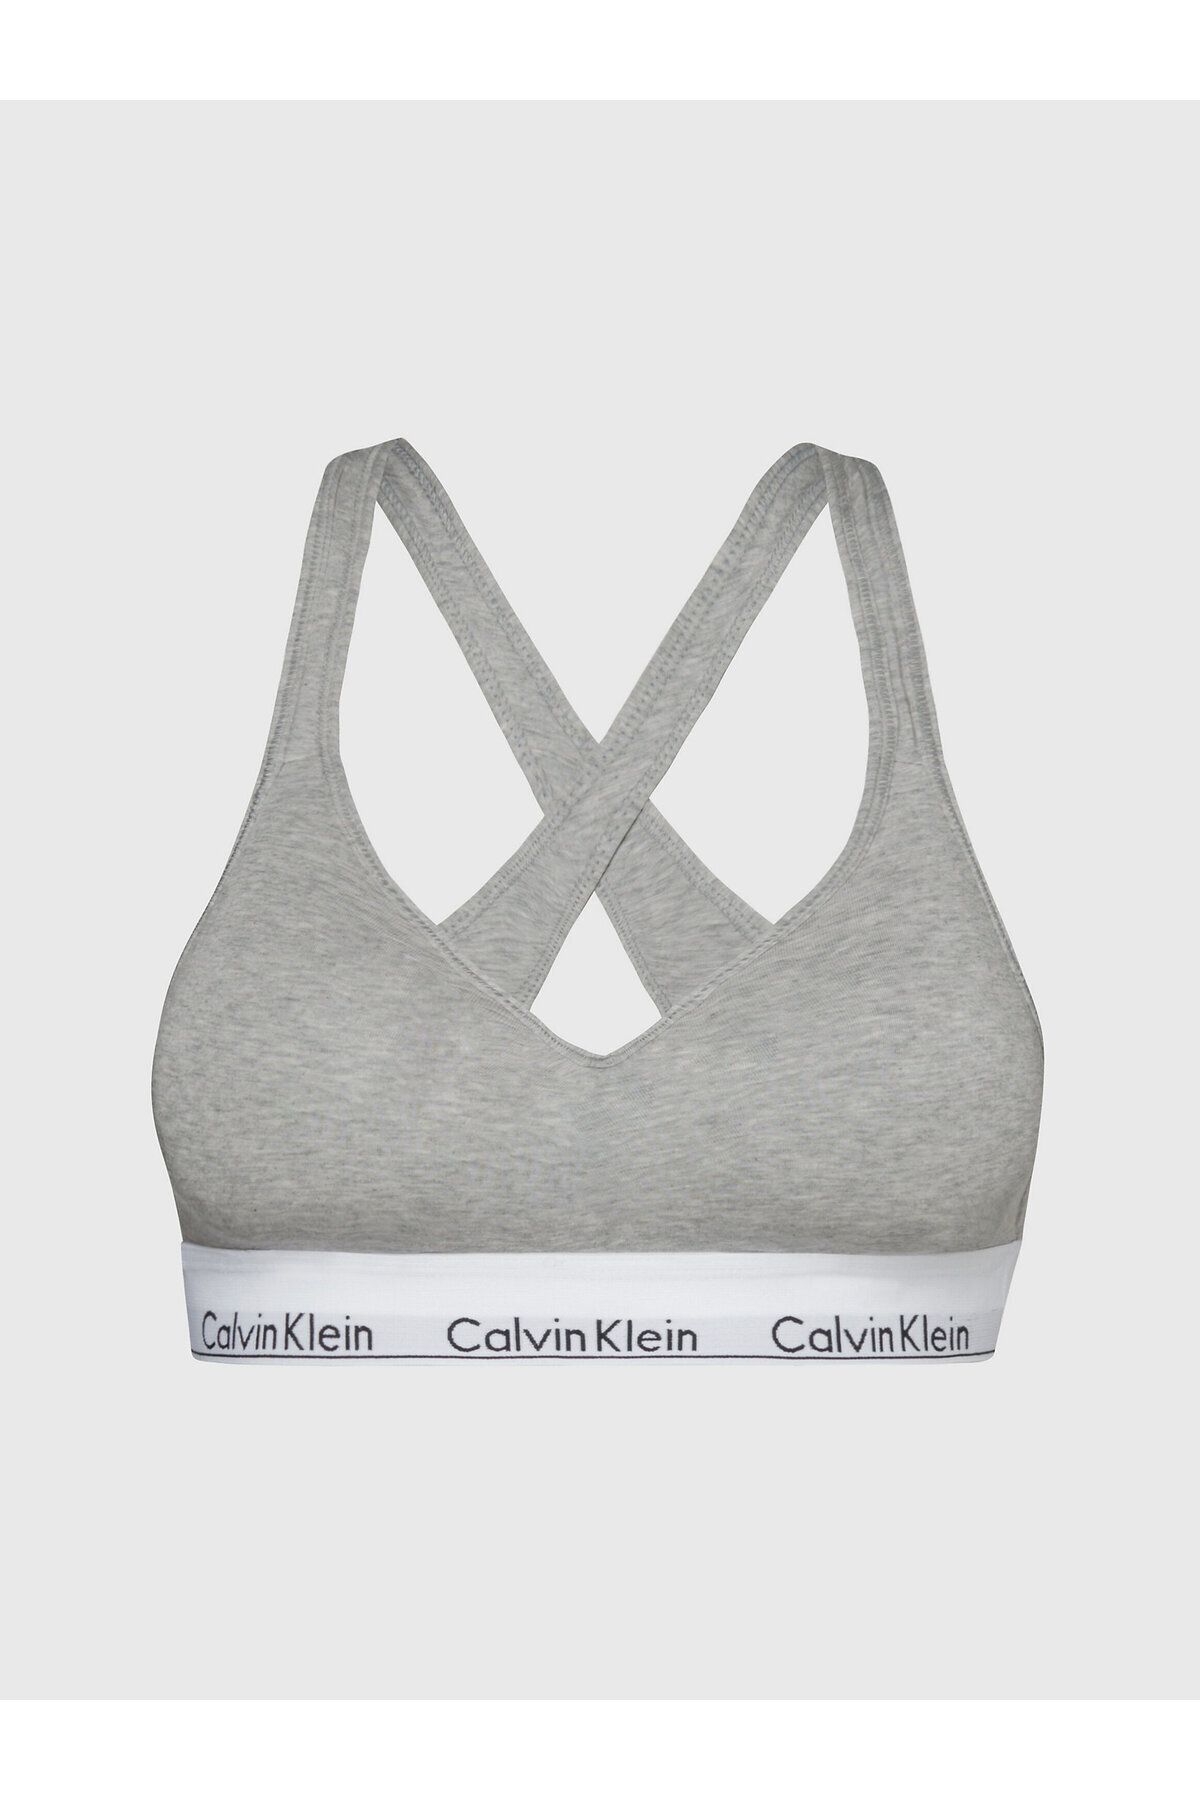 Calvin Klein Kadın Marka Logolu Askılı Spor Giyim Günlük Gri Büstiyer 000QF1654E-020